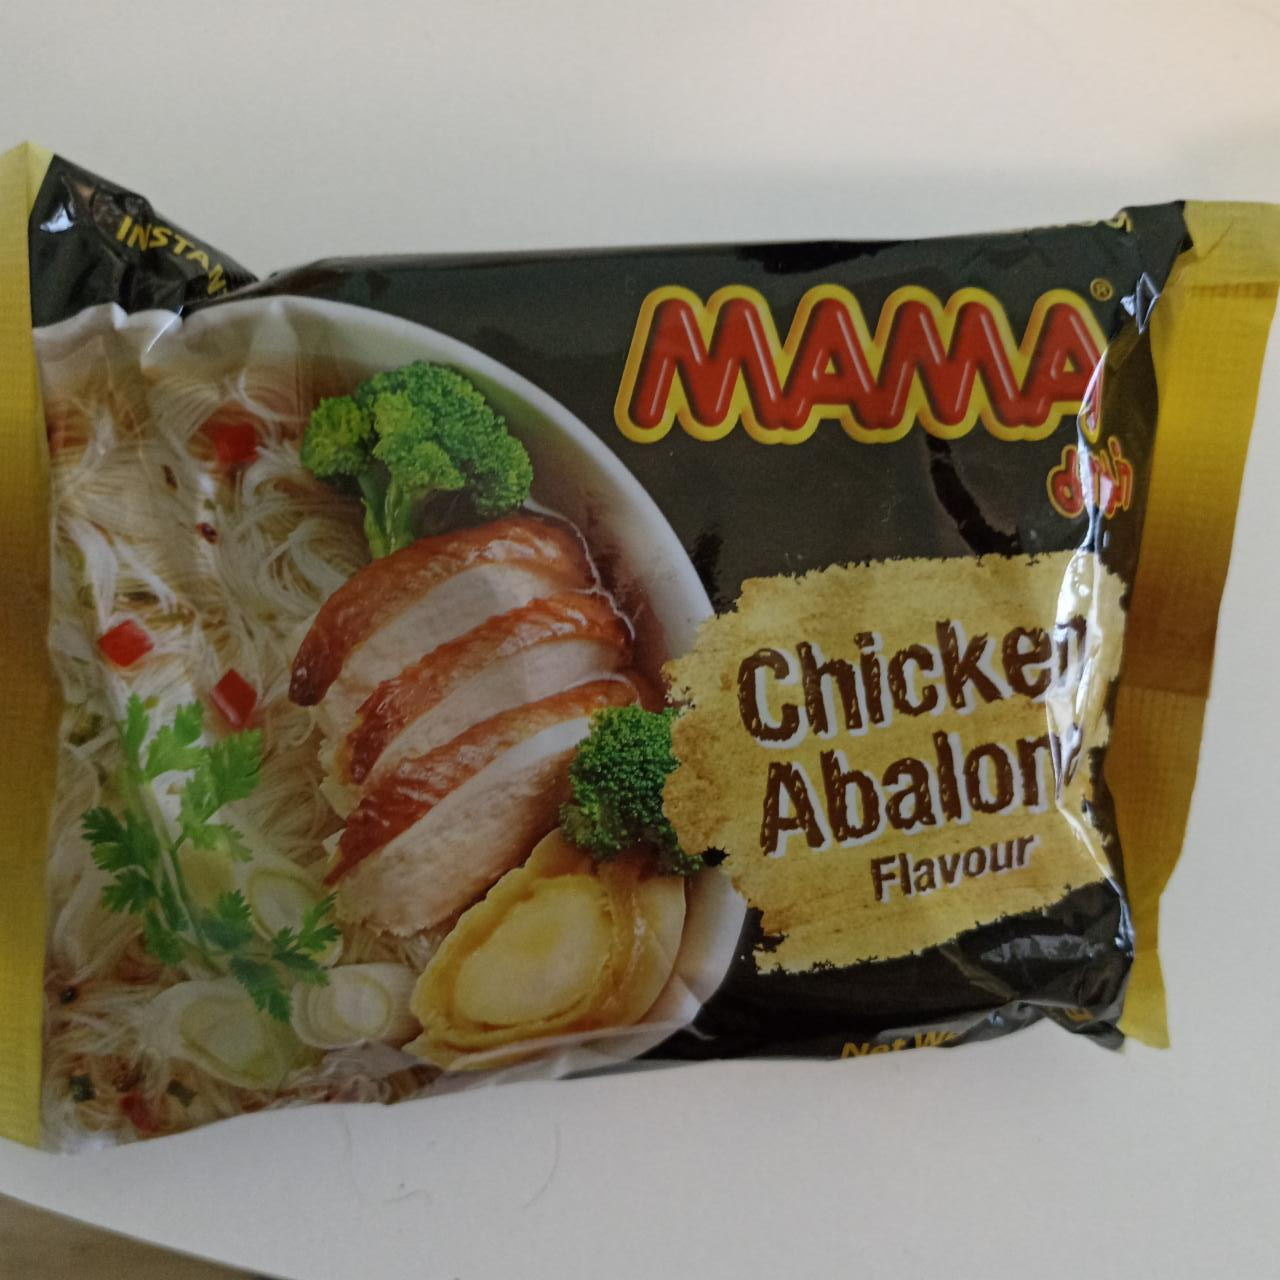 Фото - Рисовая со вкусом курицы и абалона тайская лапша Mama